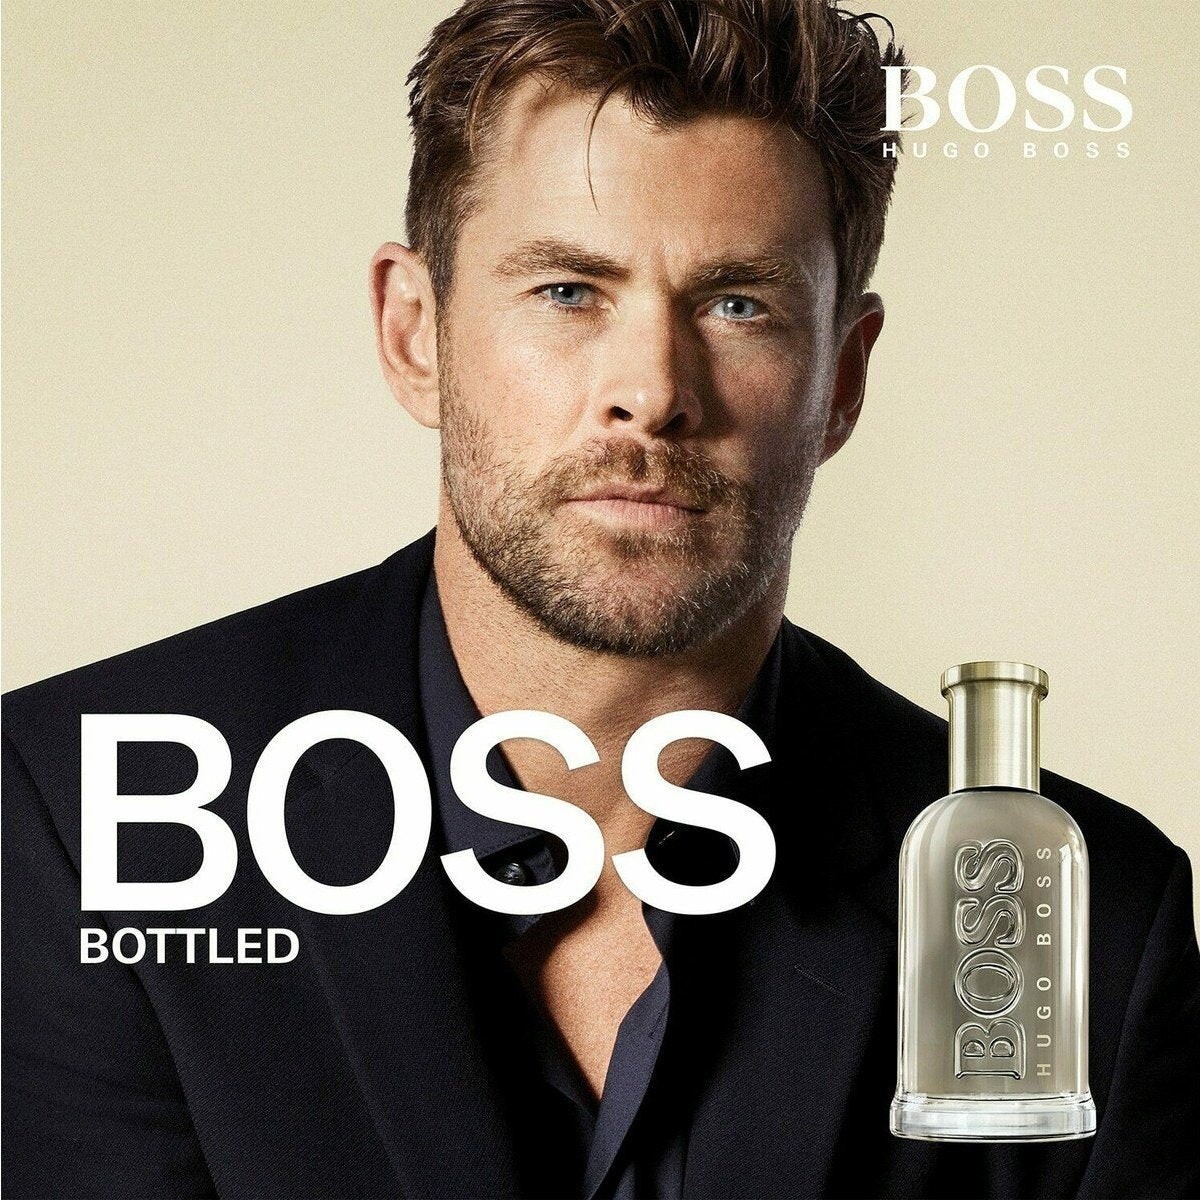 Hugo Boss Bottled Gift Set For Men - My Perfume Shop Australia